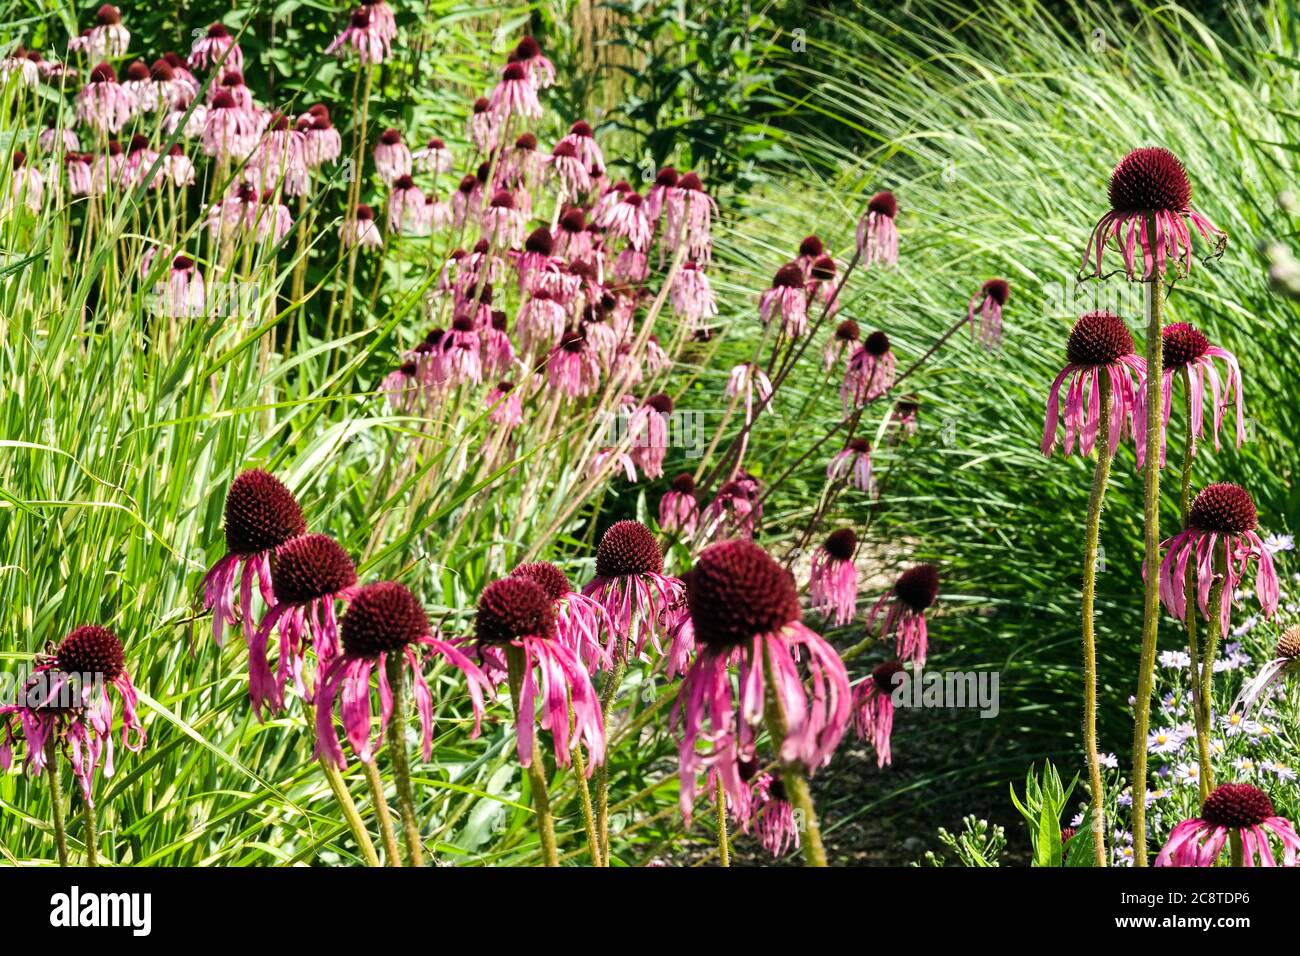 Echinacea pallida flowers in grassy garden Purple coneflowers Stock Photo